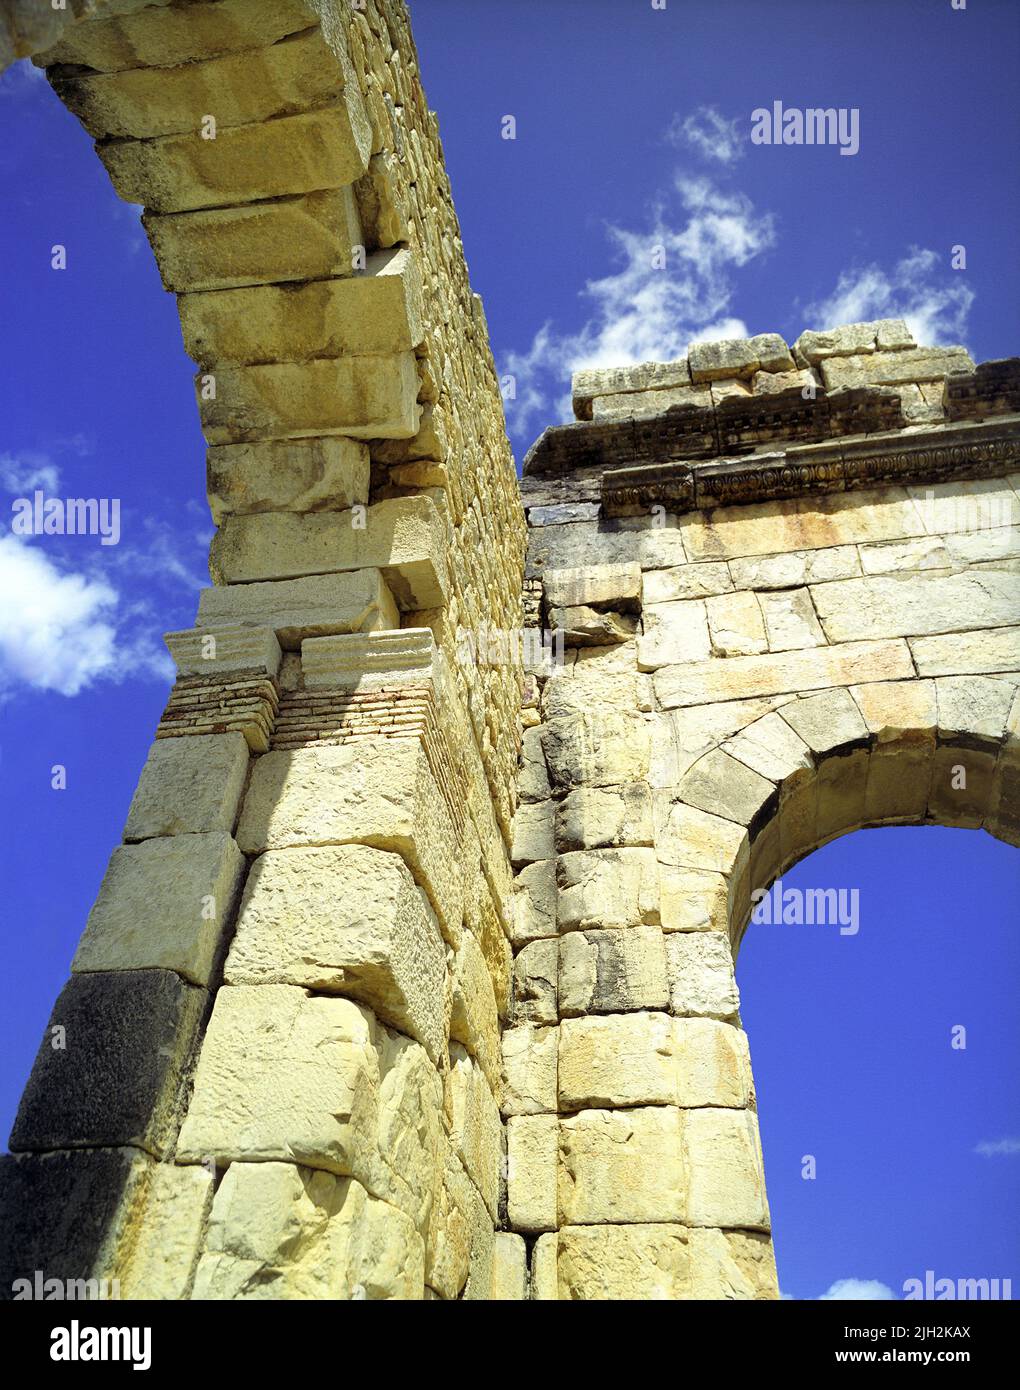 Arco de piedra en las ruinas romanas de Volubilis. Meknes, Marruecos Foto de stock